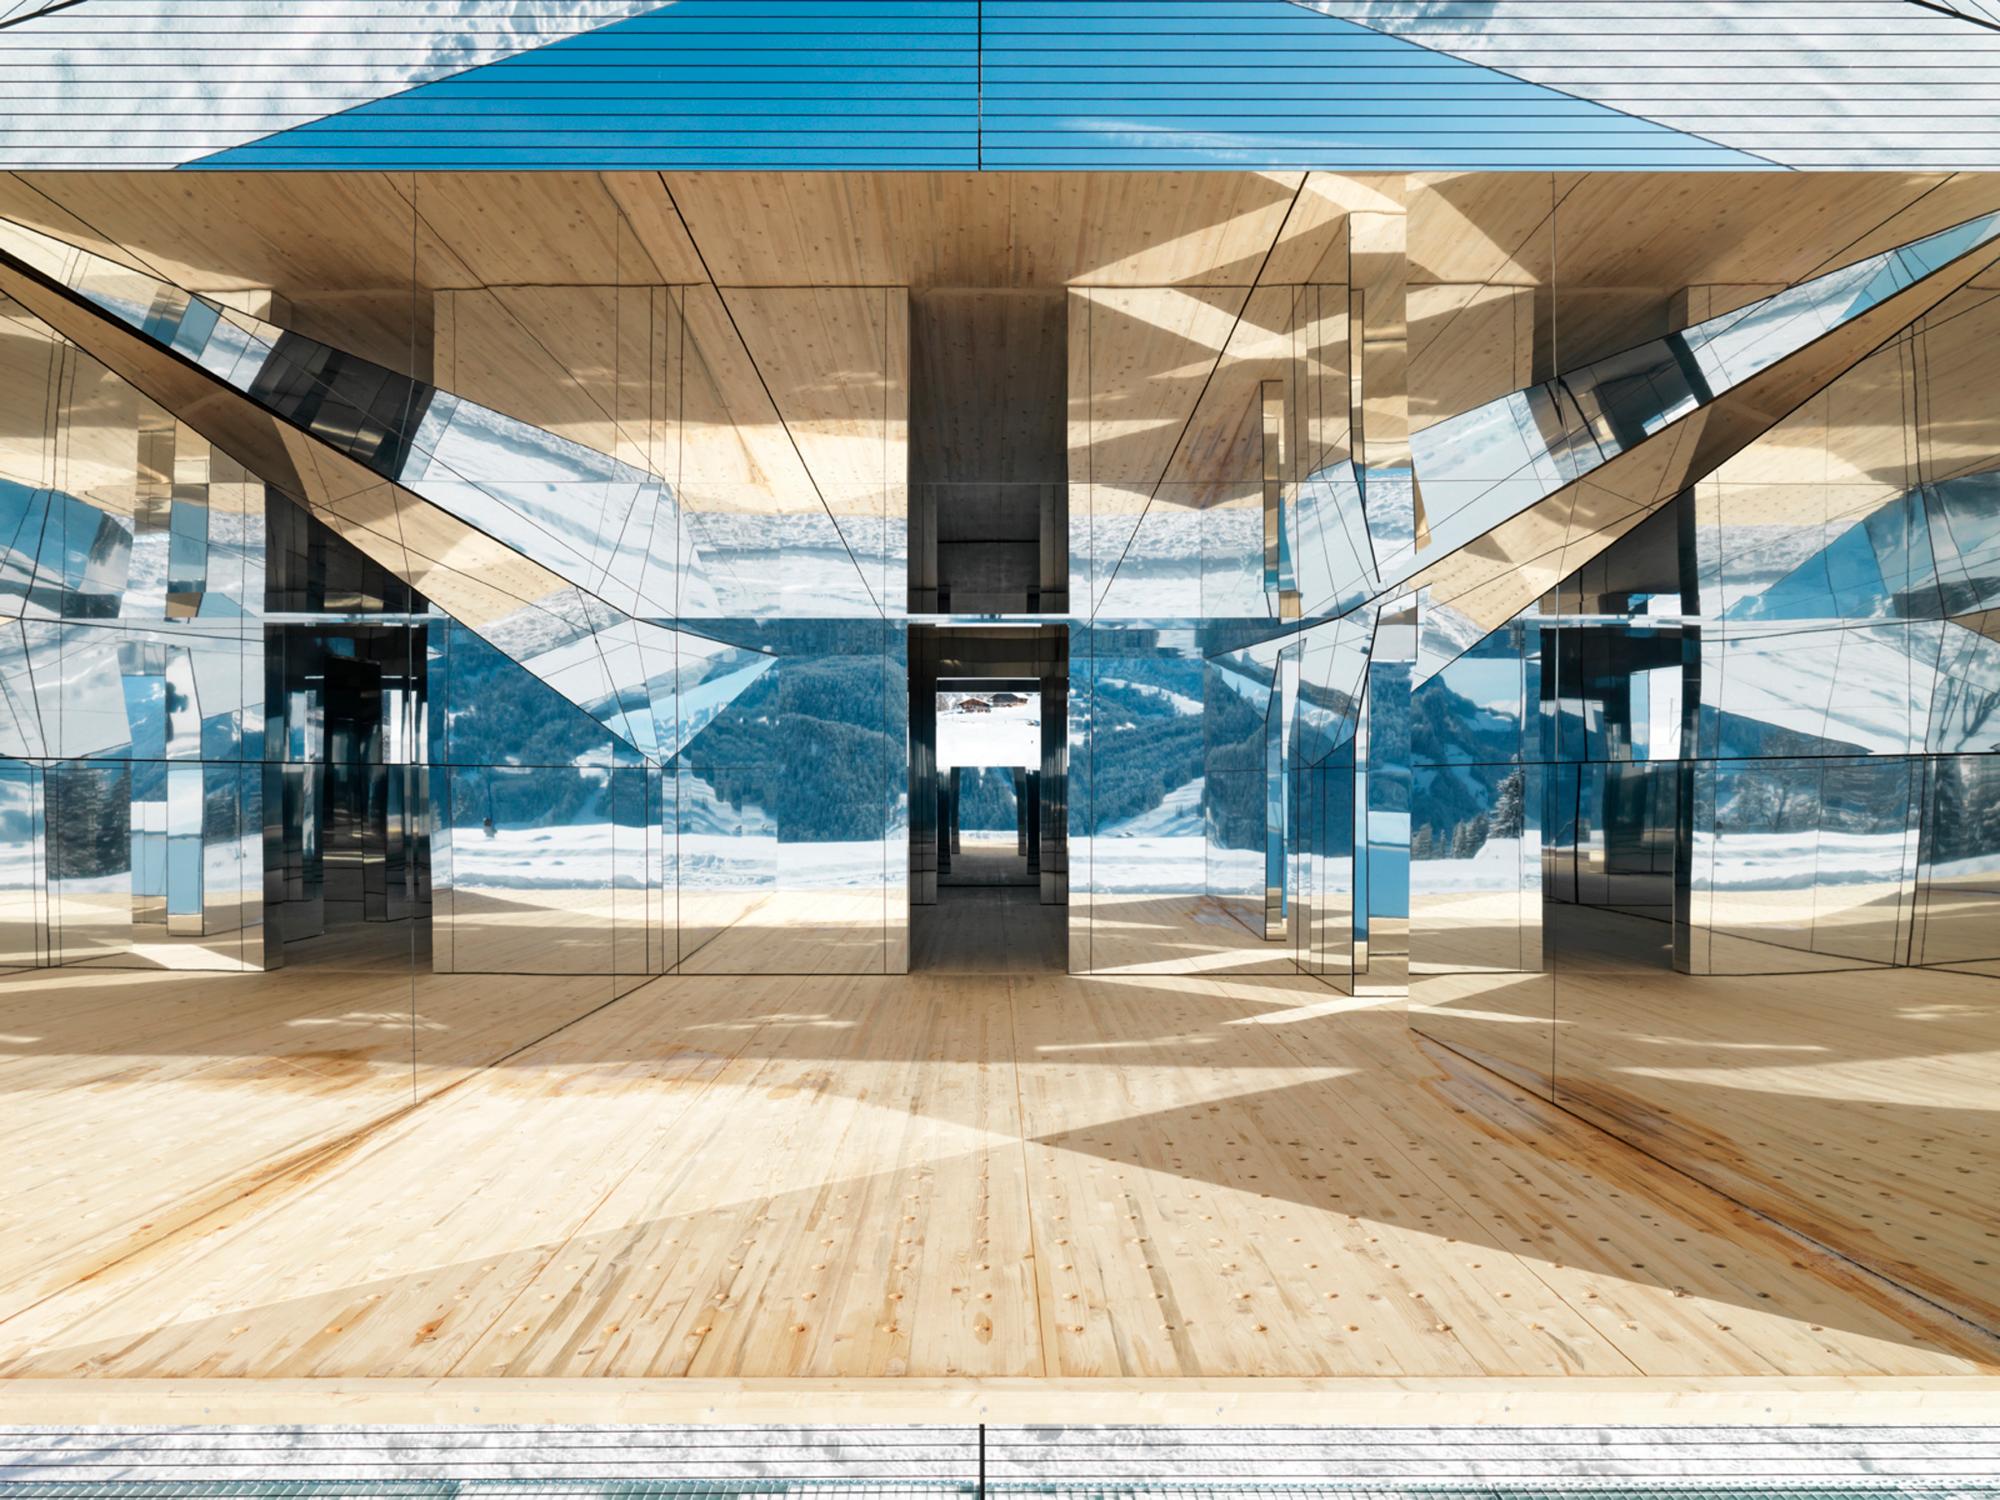 Vista interior de la ‘Mirage Gstaad’;casa de los espejos; suiza ubicada en Gstaad.